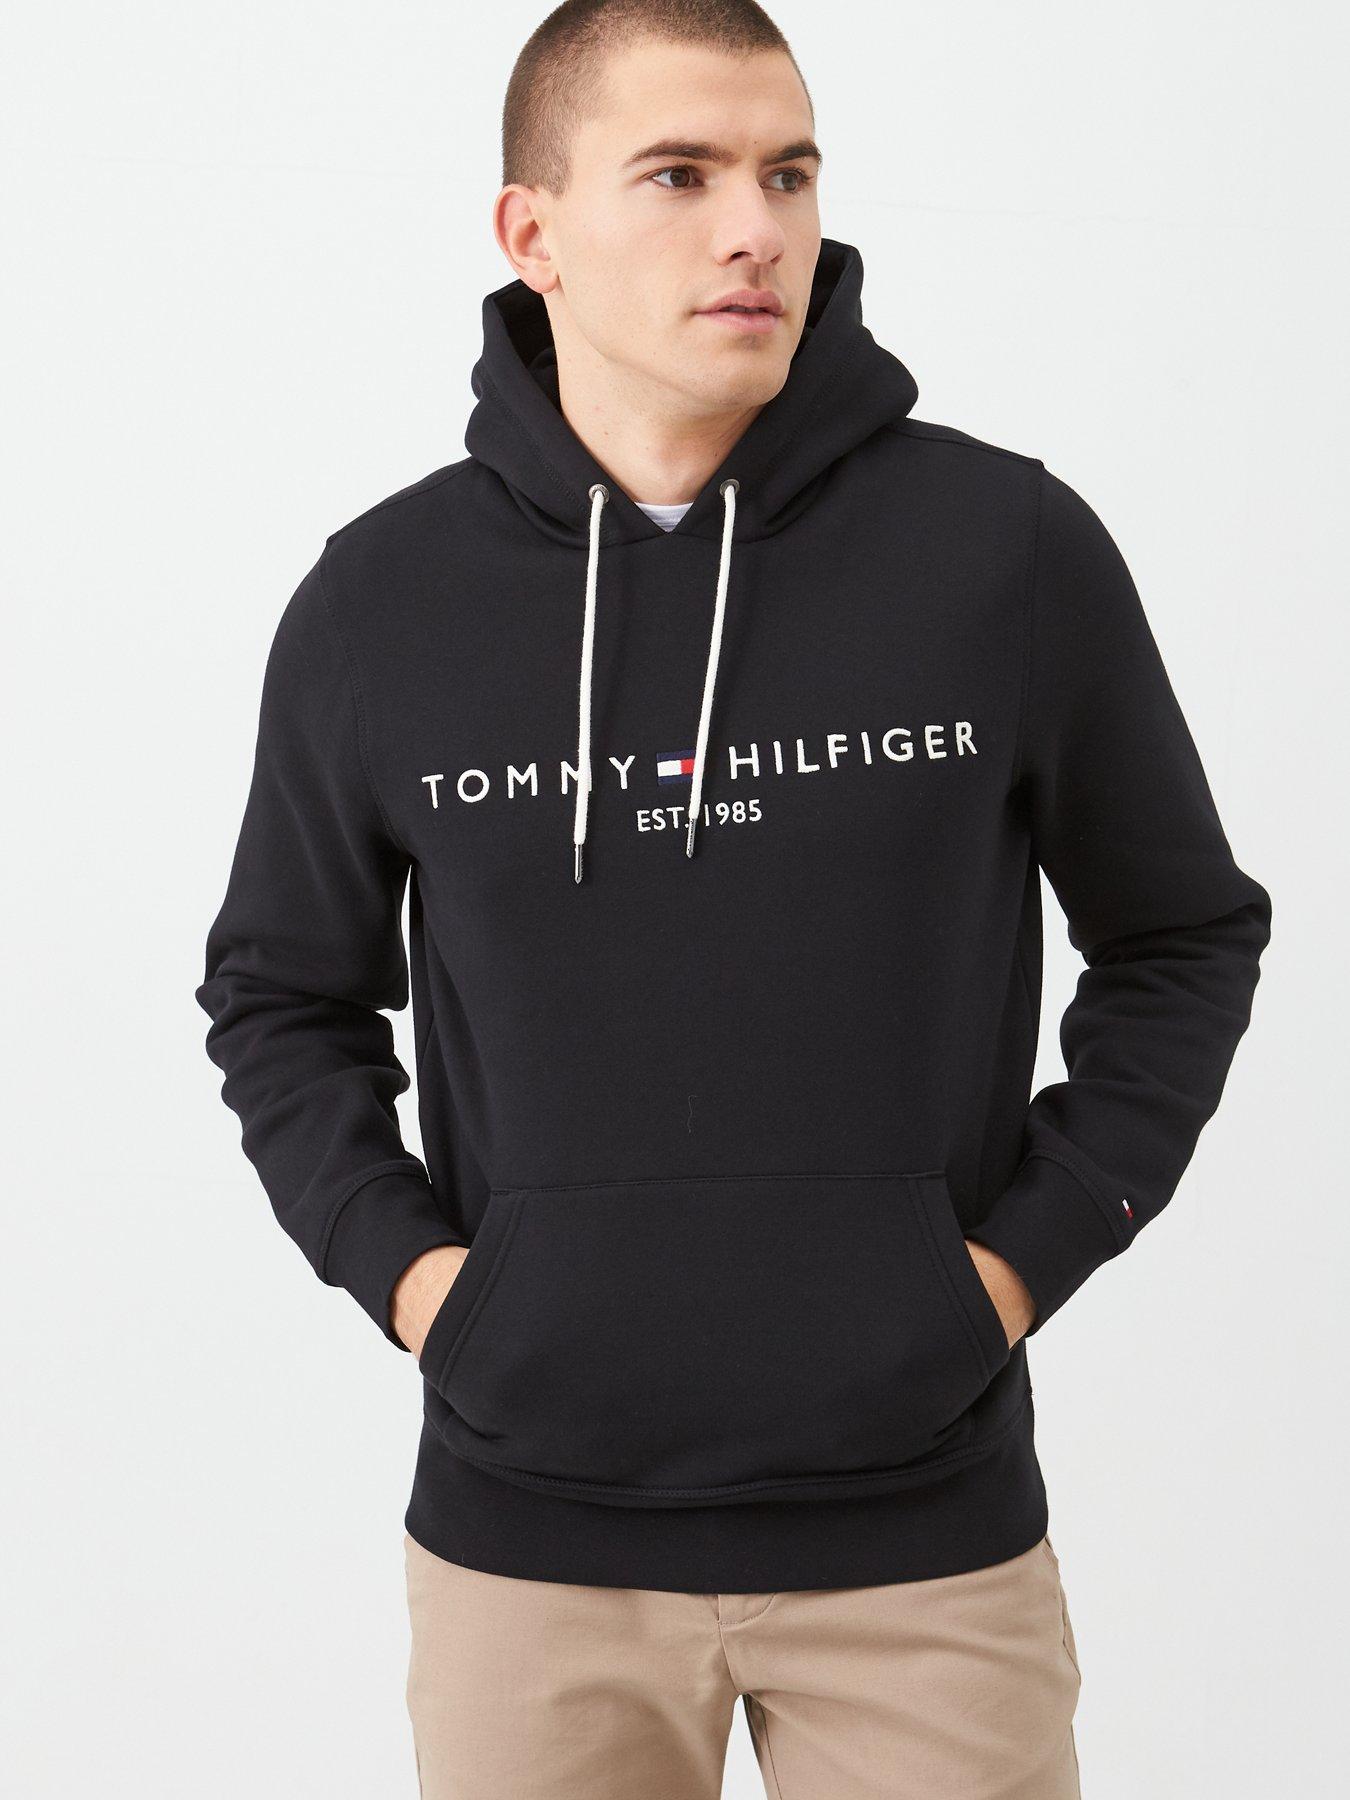 Tommy Hilfiger embroidered logo half zip sweatshirt in navy